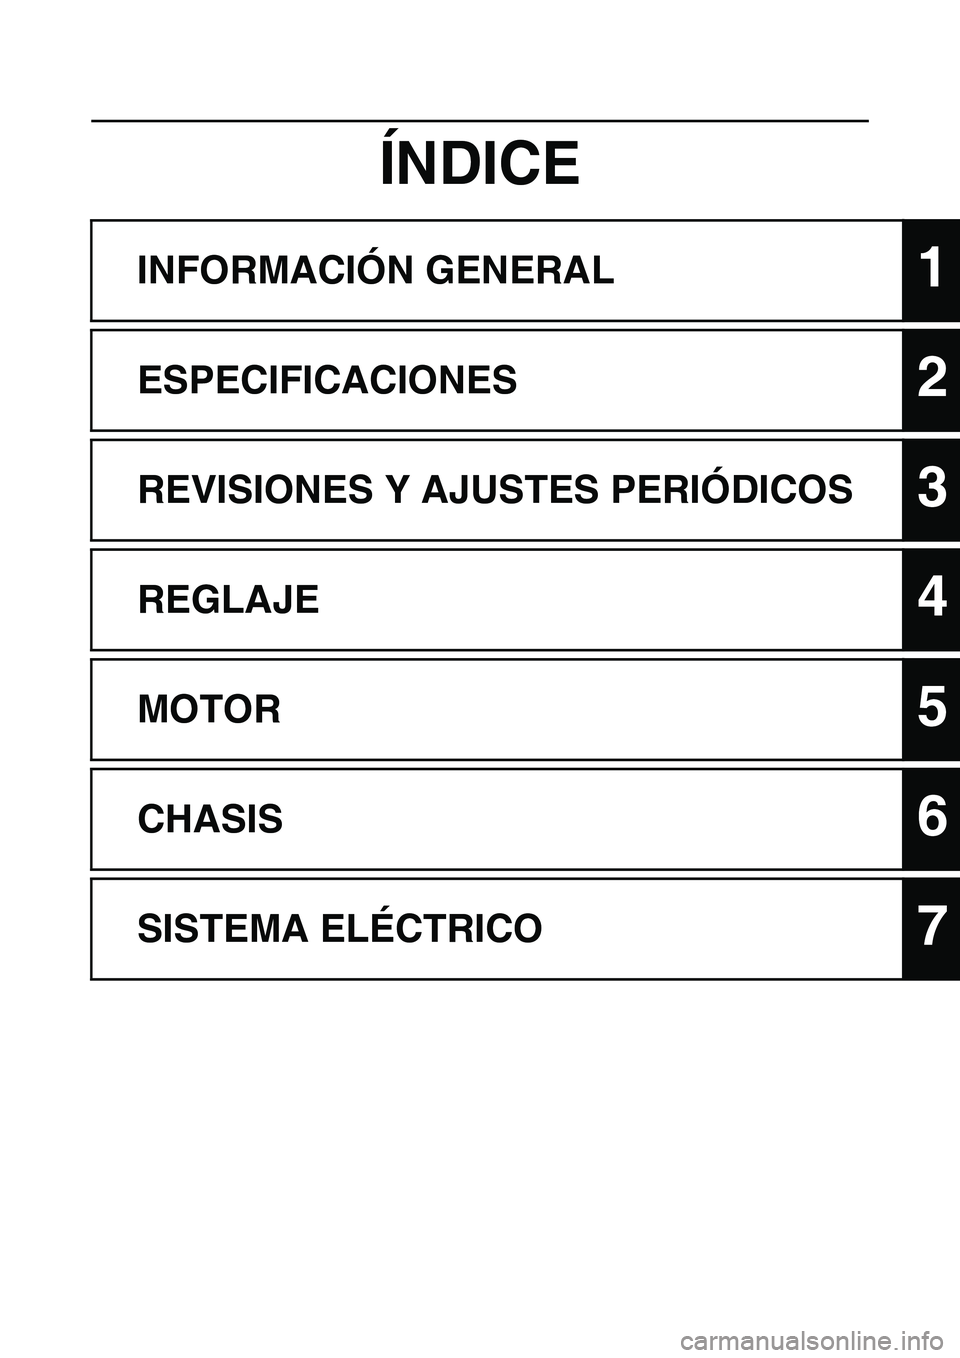 YAMAHA WR 450F 2011  Manuale de Empleo (in Spanish) 
ÍNDICE
INFORMACIÓN GENERAL1
ESPECIFICACIONES2
REVISIONES Y AJUSTES PERIÓDICOS3
REGLAJE4
MOTOR5
CHASIS6
SISTEMA ELÉCTRICO7 